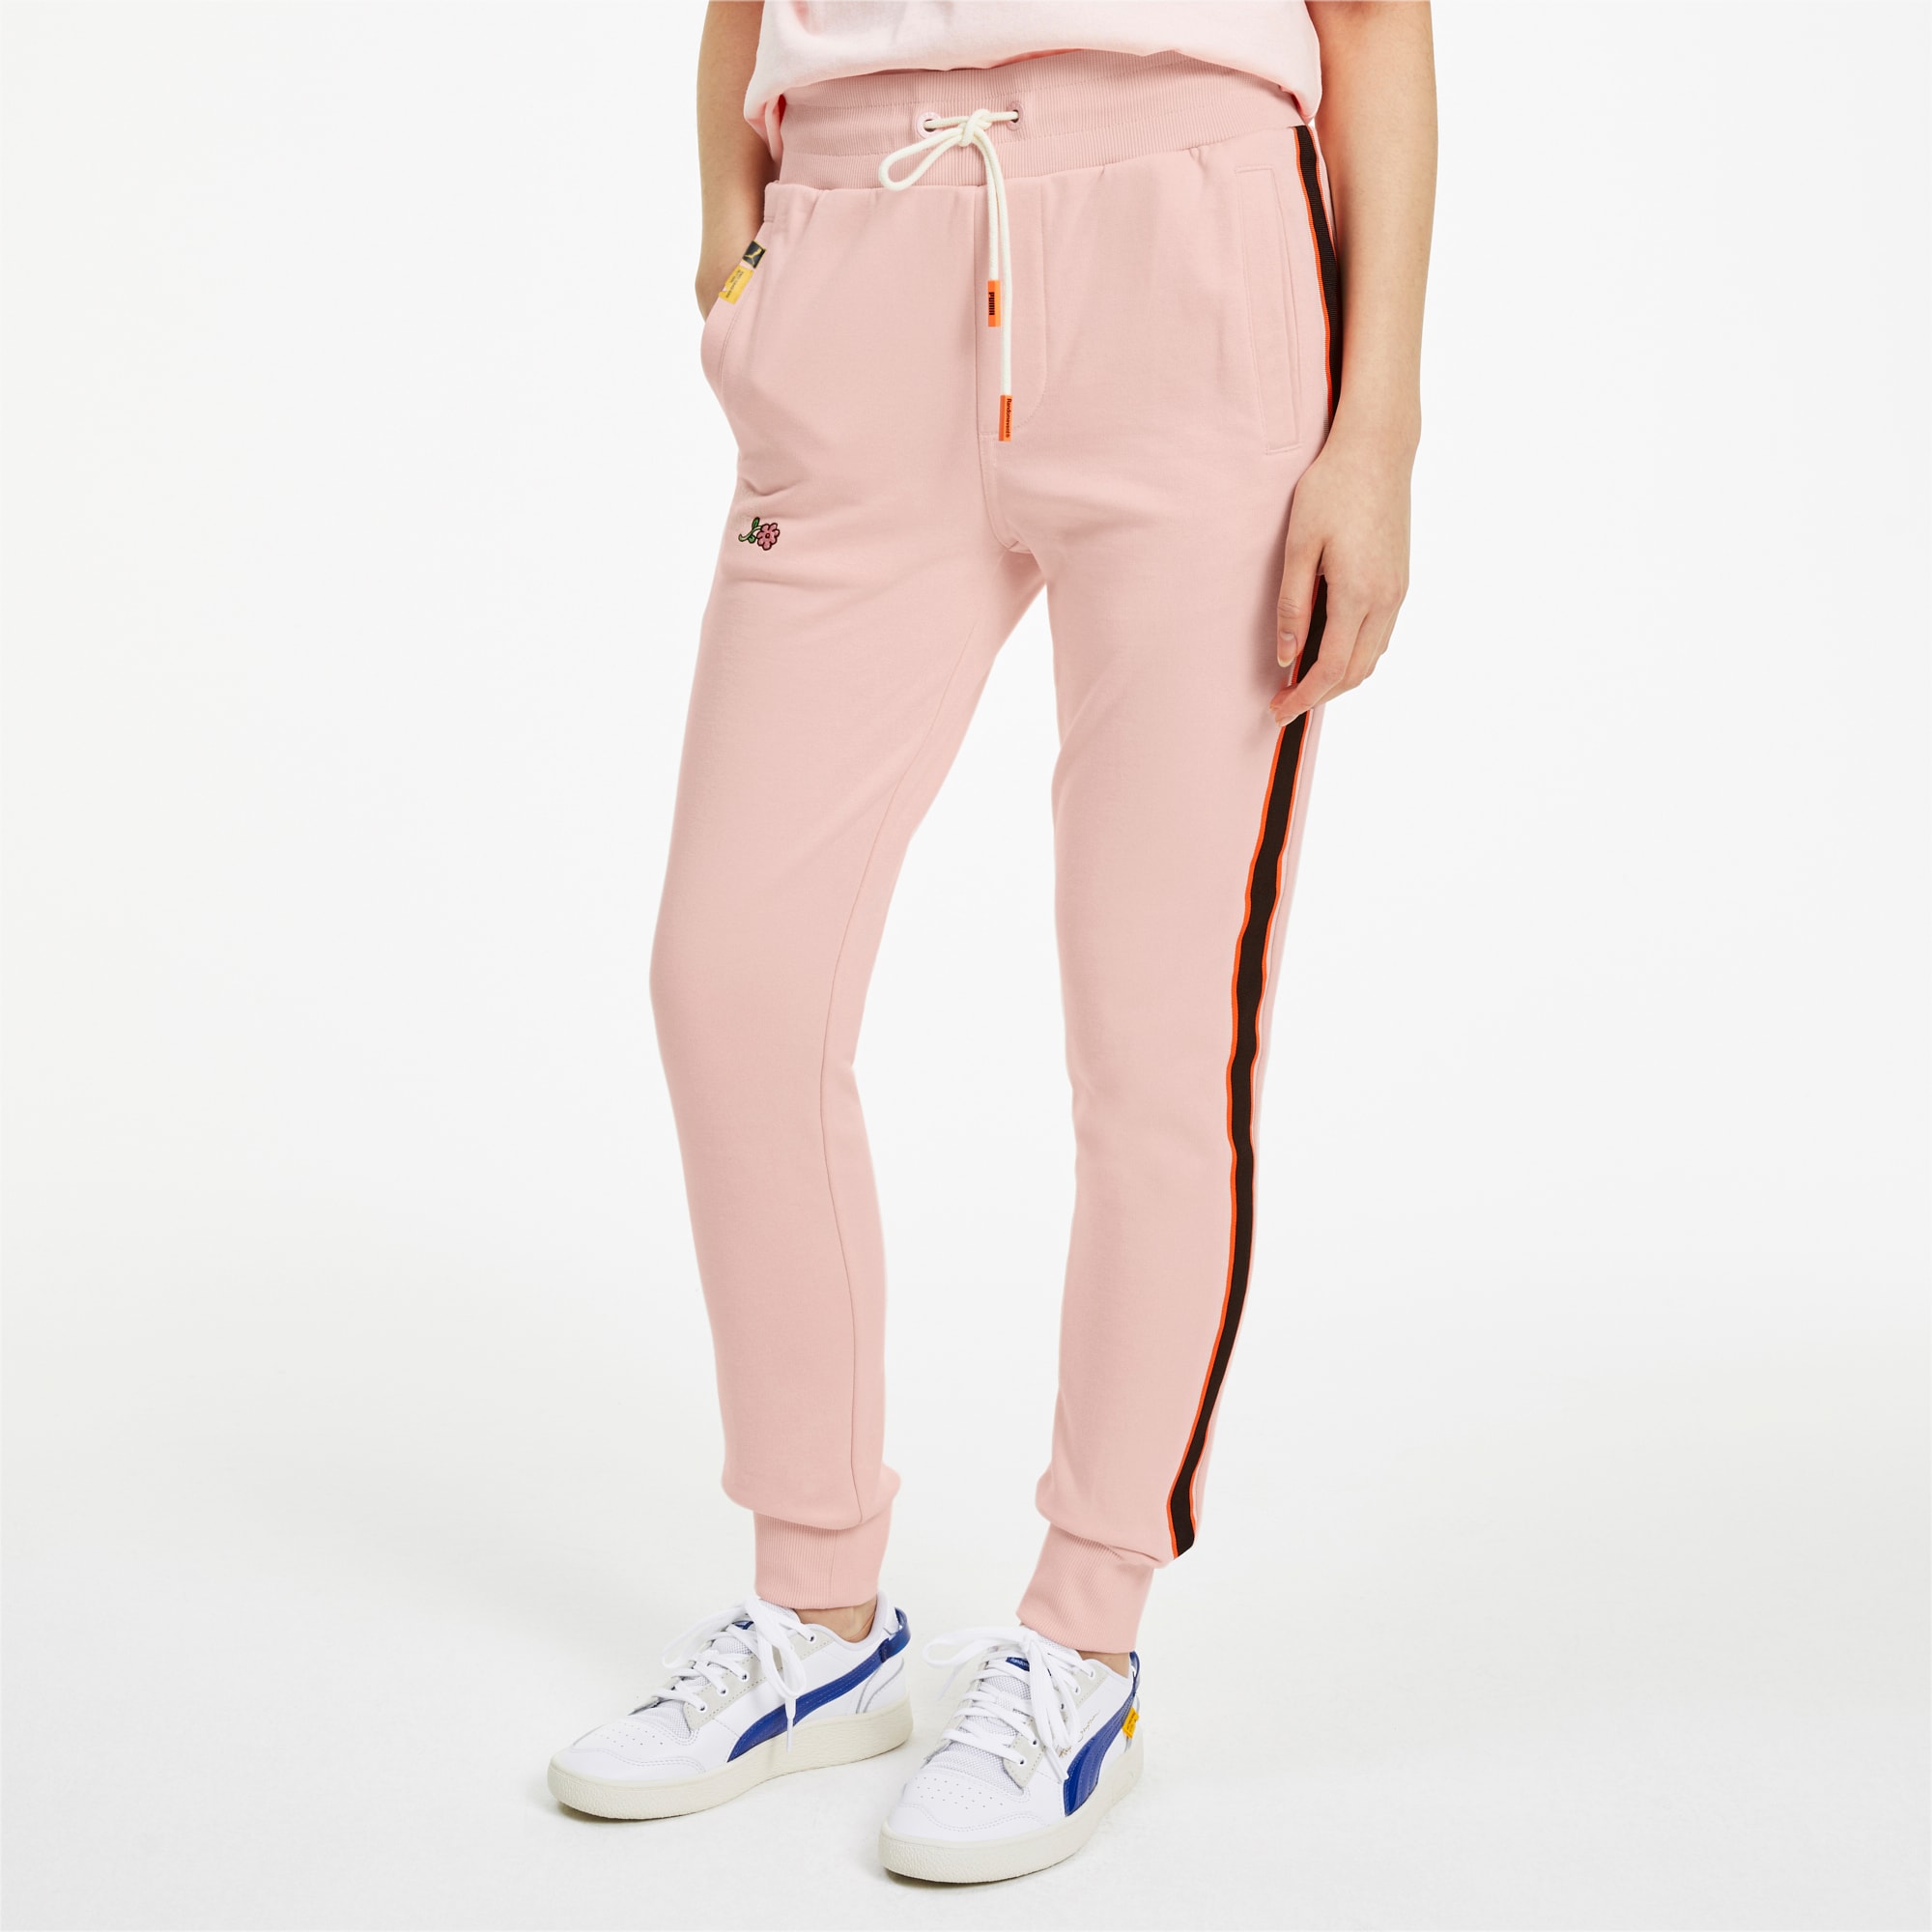 pink puma pants